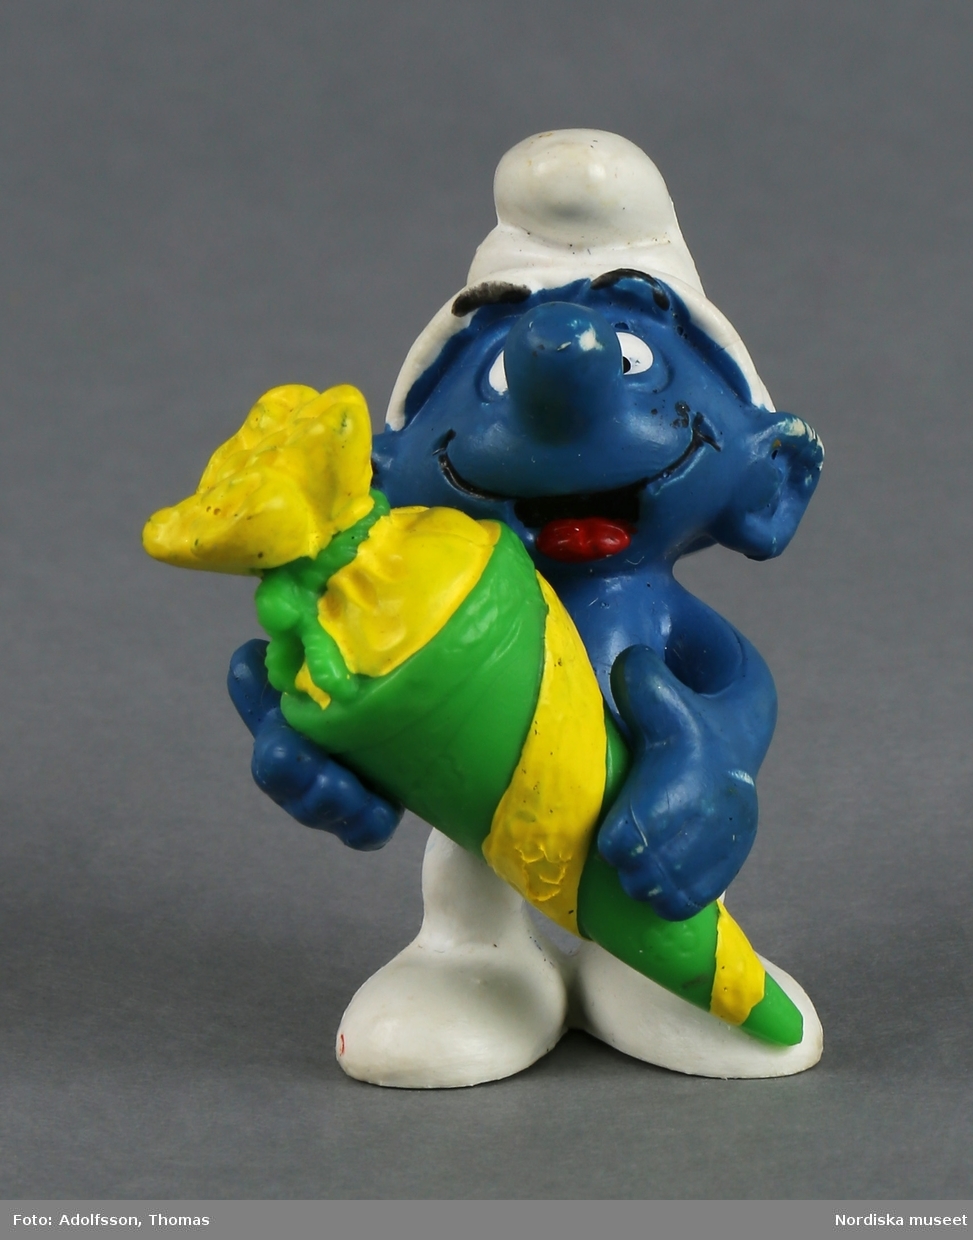 Tomteliknande figur som kallas Smurf, med blå kropp, vit luva och vita byxor. I handen håller han en stor gulgrön godisstrut.  Ansiktsuttrycket är glatt och tungan sticker ut.